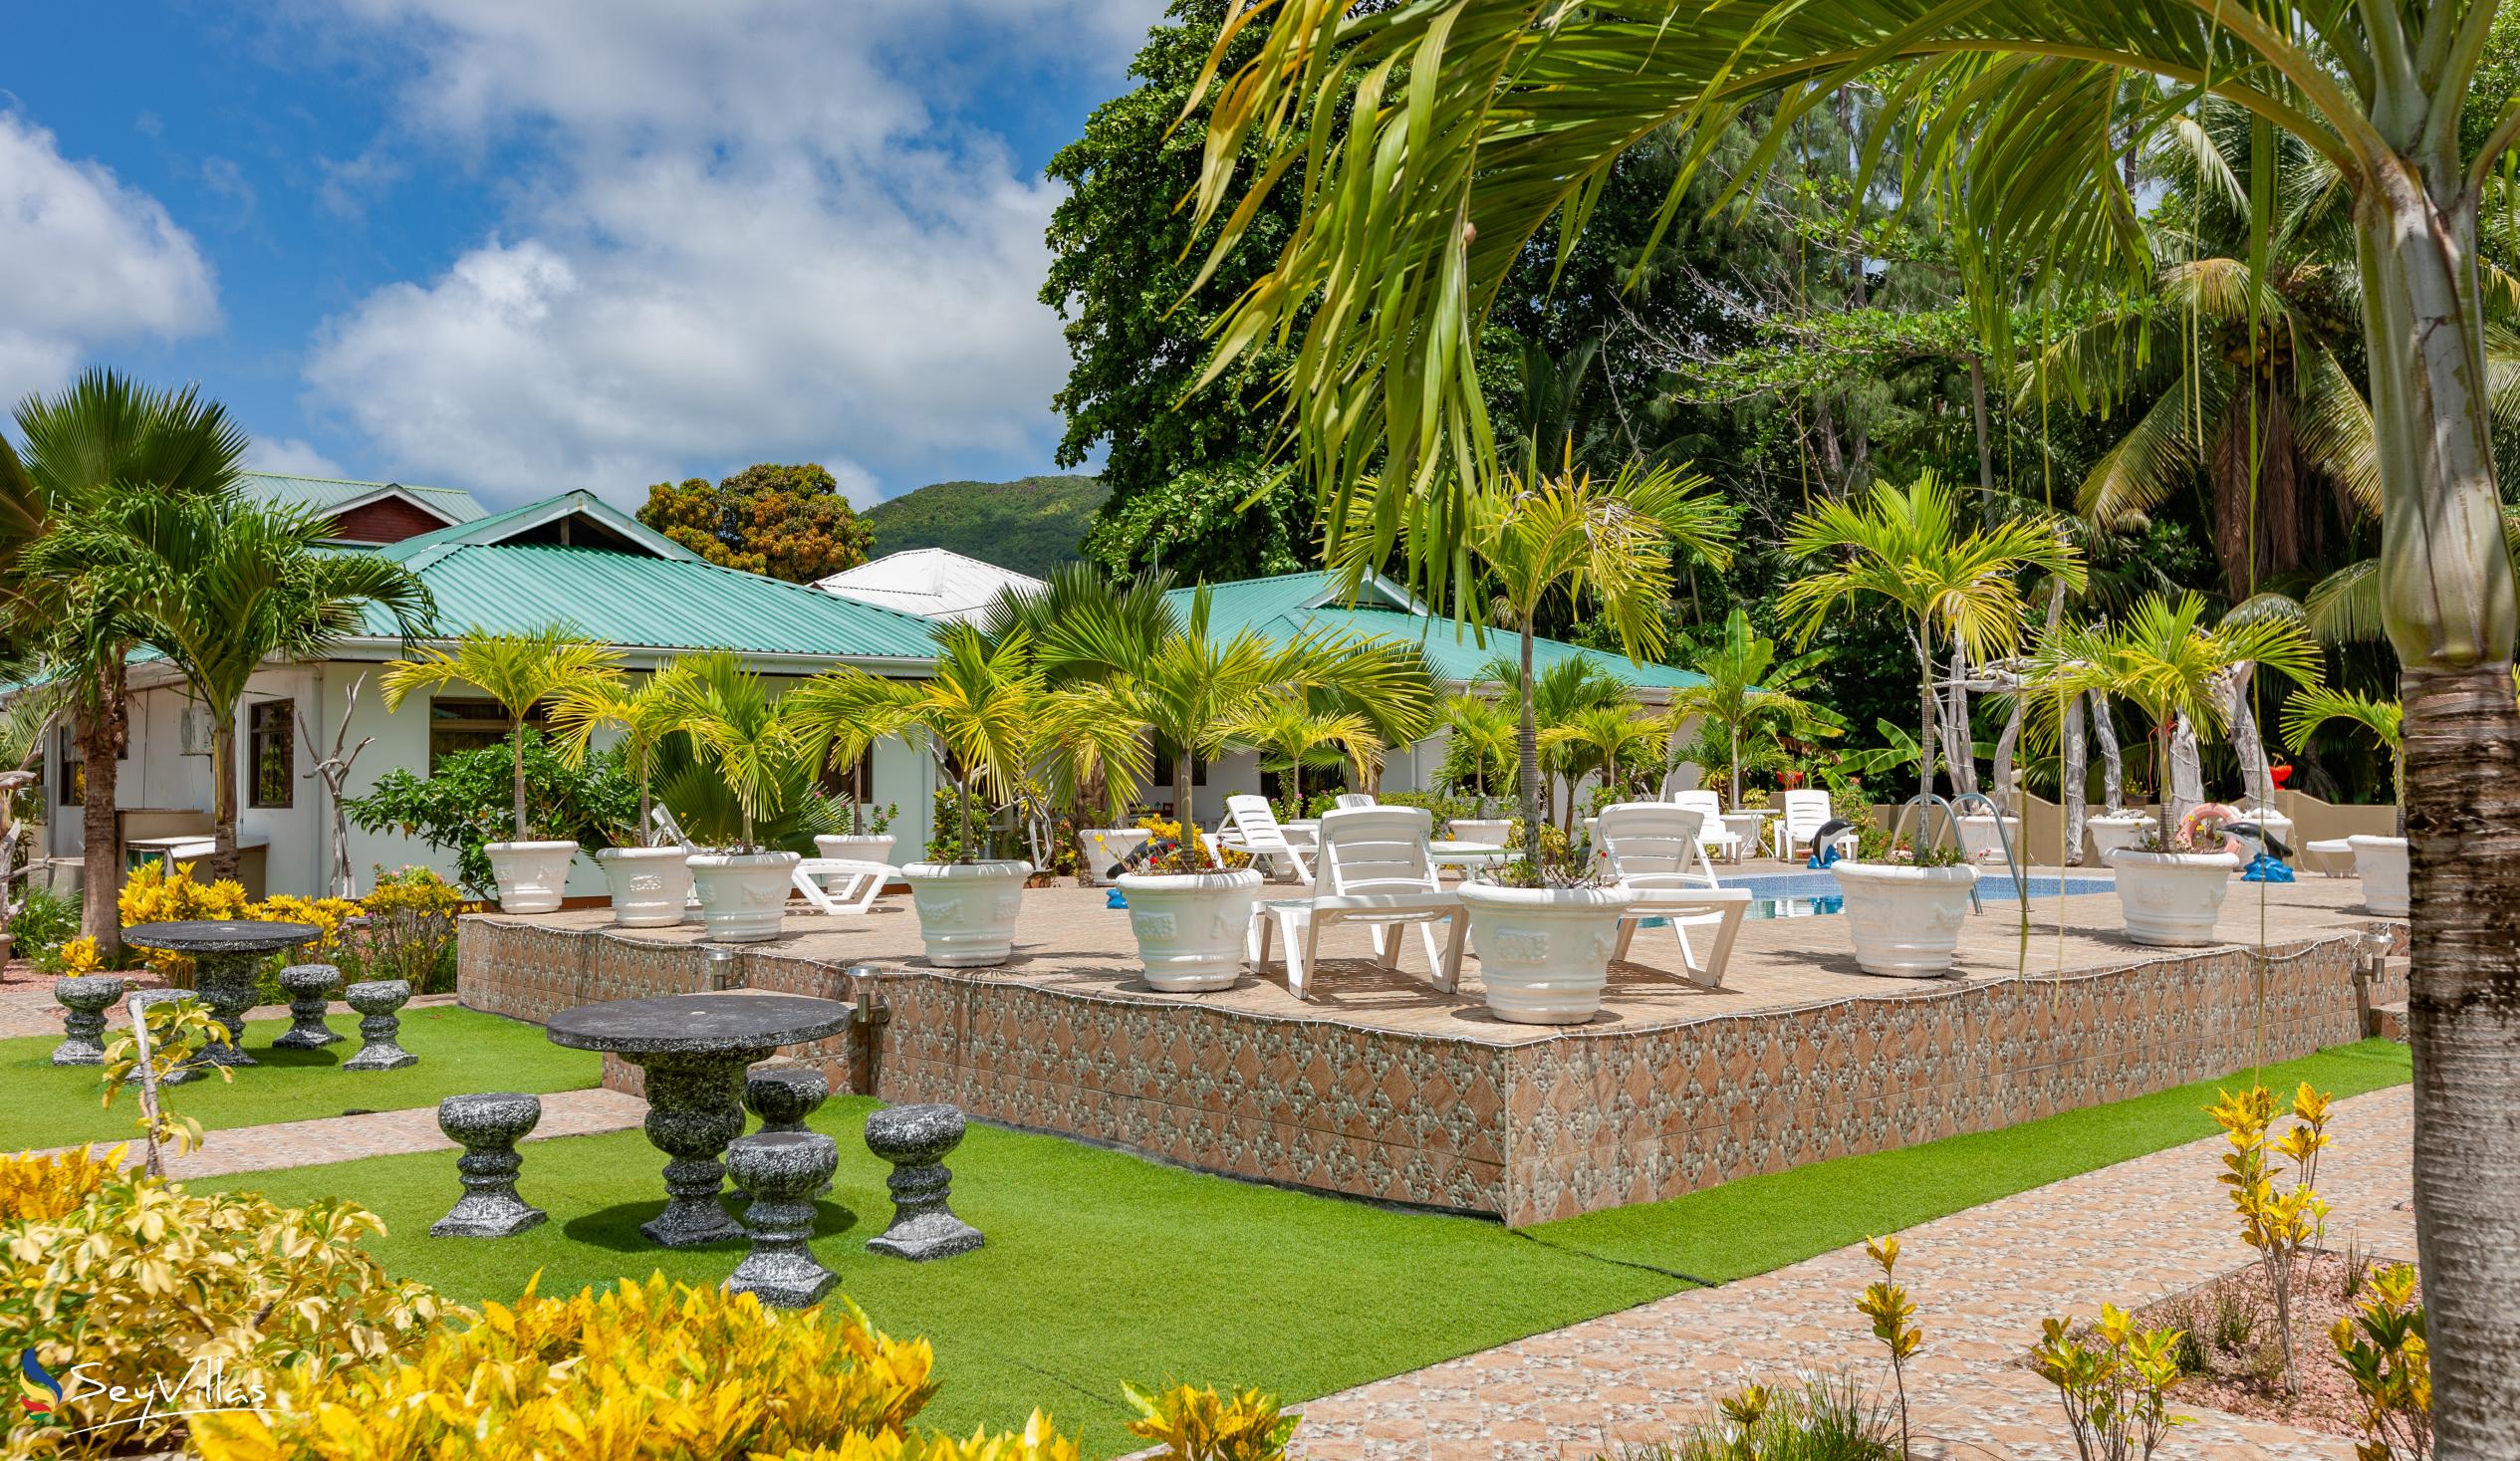 Foto 18: Belle Vacance Self Catering - Aussenbereich - Praslin (Seychellen)